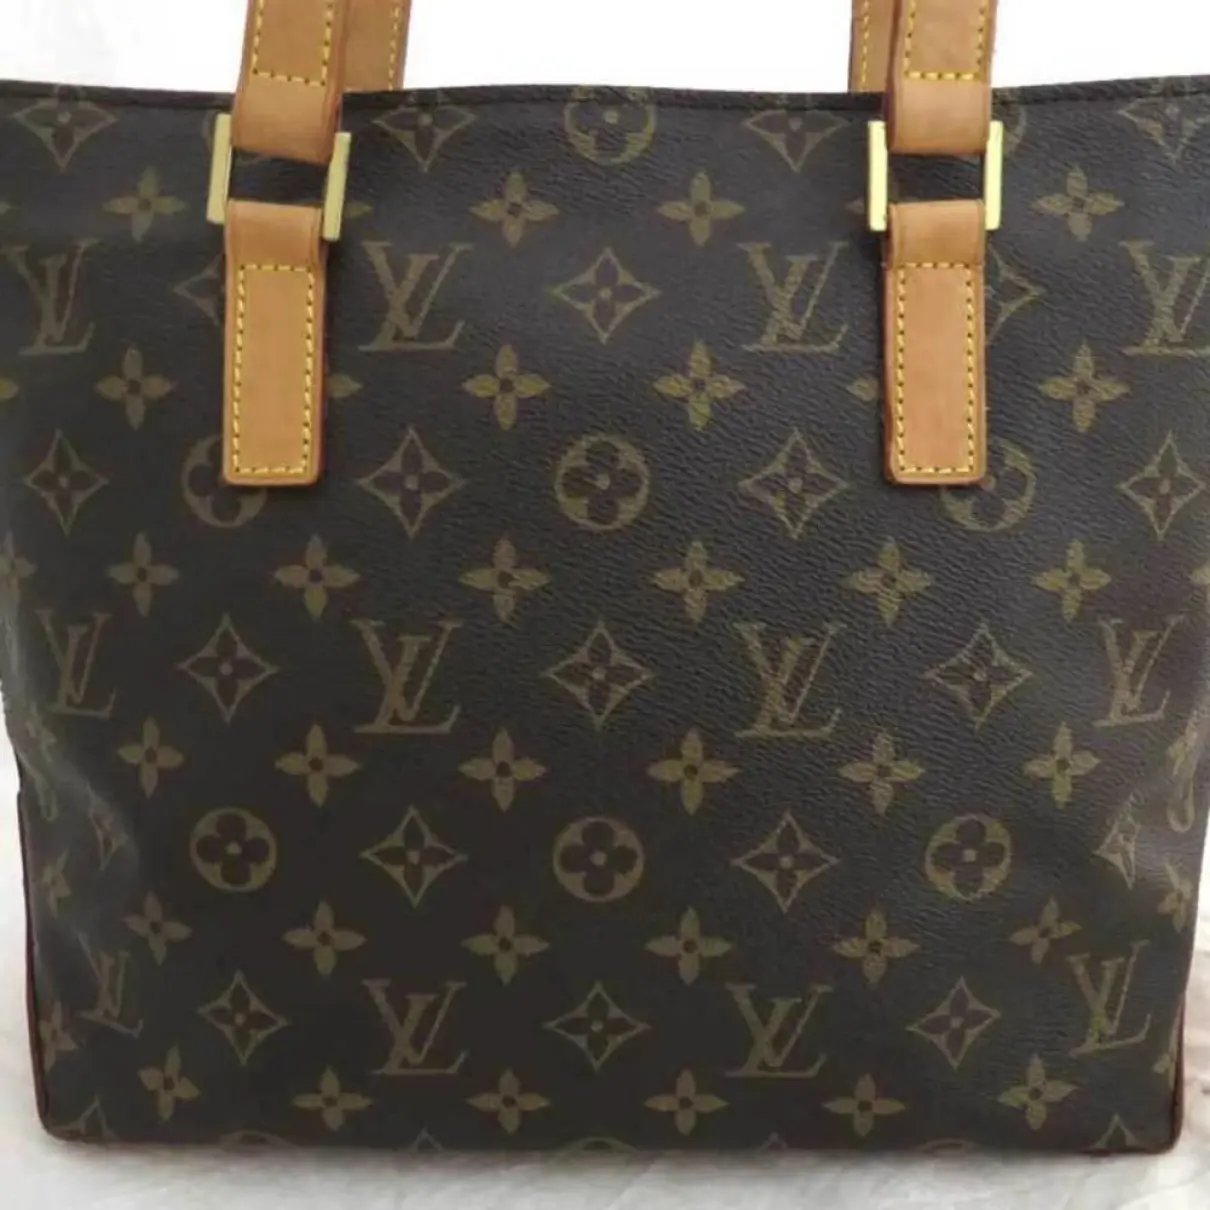 Buy Louis Vuitton Piano cloth handbag online - Vintage